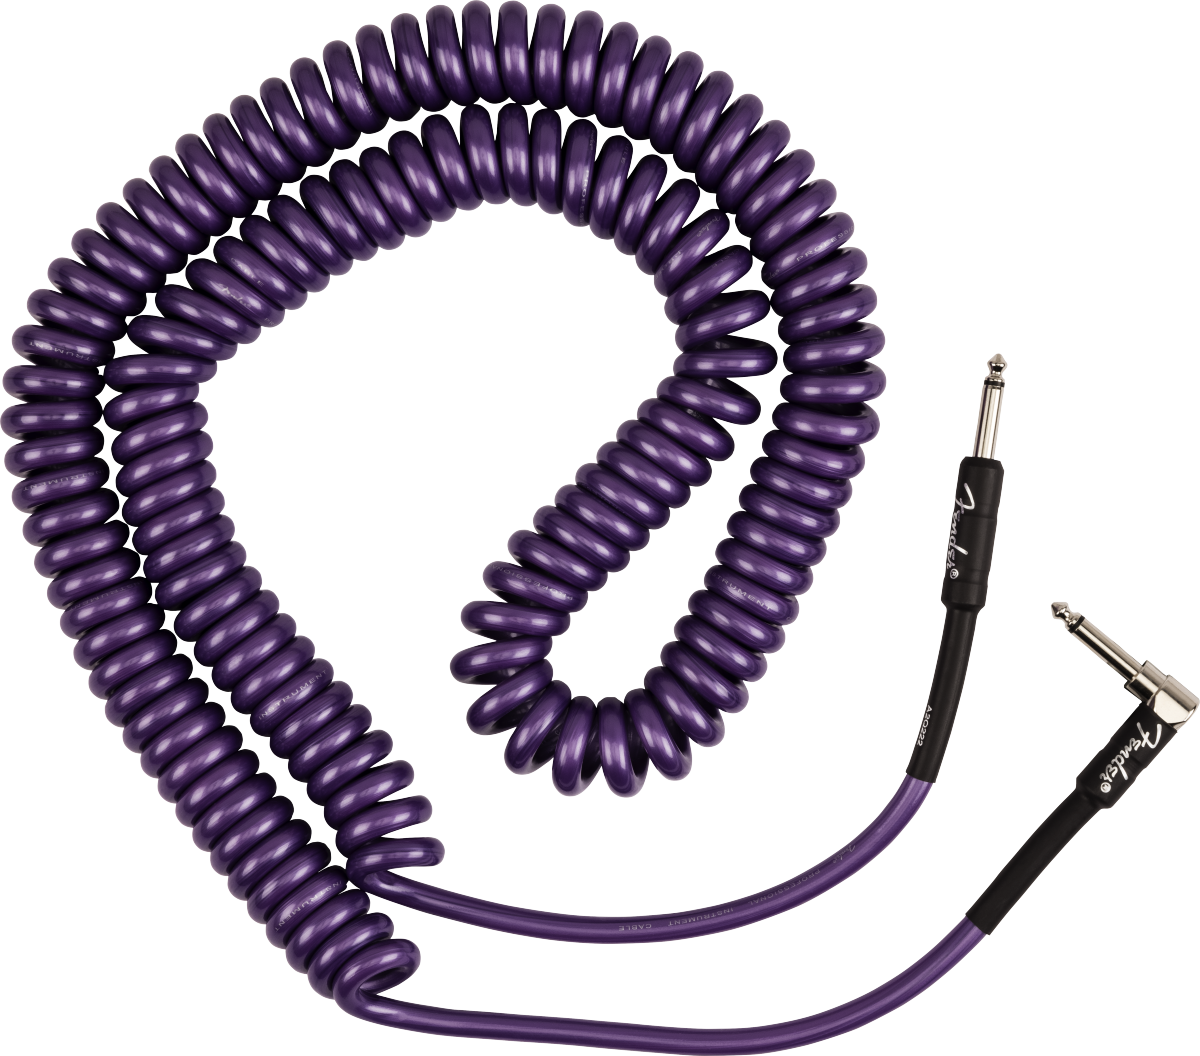 Fender J Mascis Coiled Instrument Cable Signature Droit Coude 90ft 9.14m Purple - Cable - Variation 2